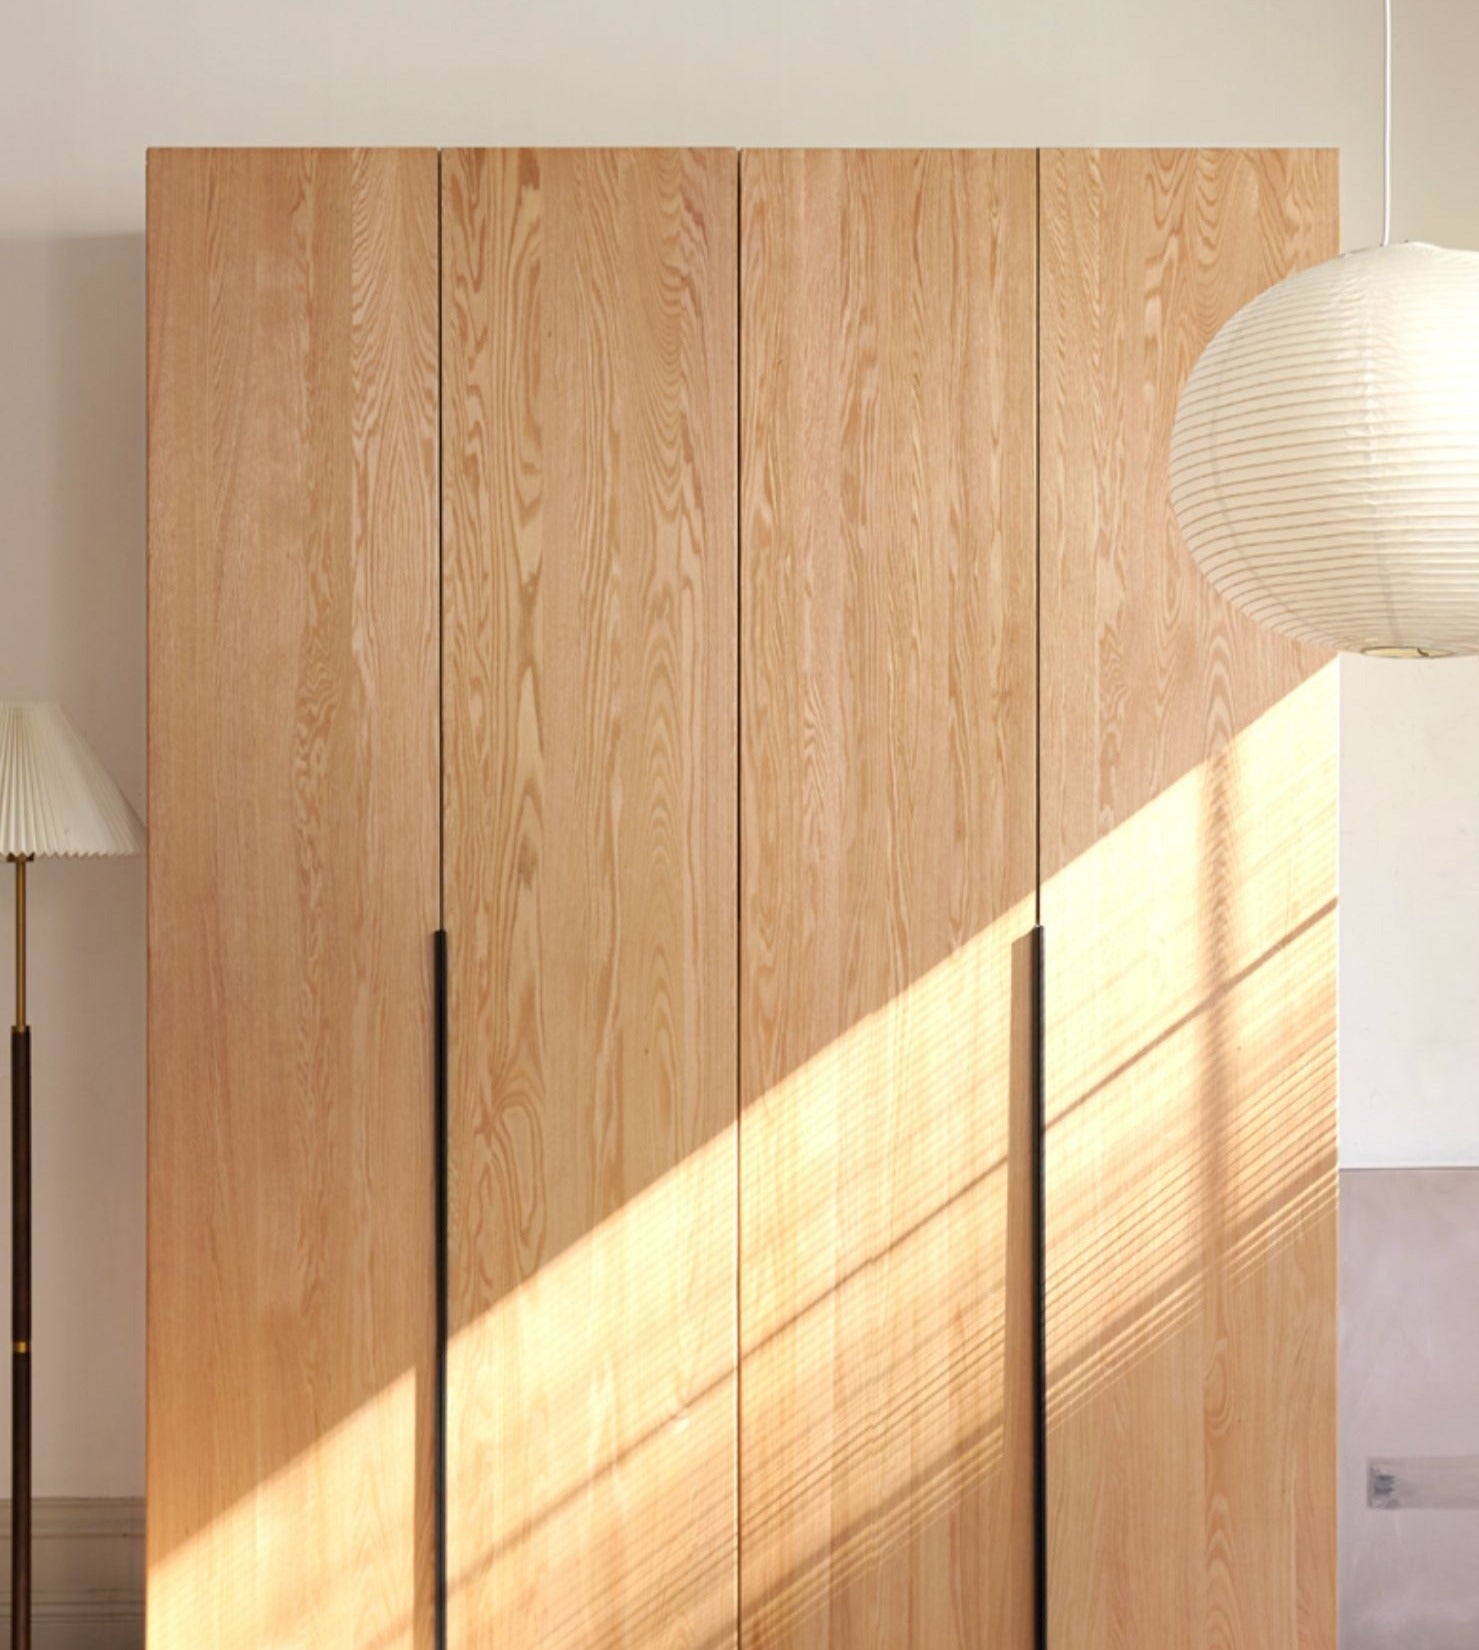 Oak solid wood high wardrobe modern"